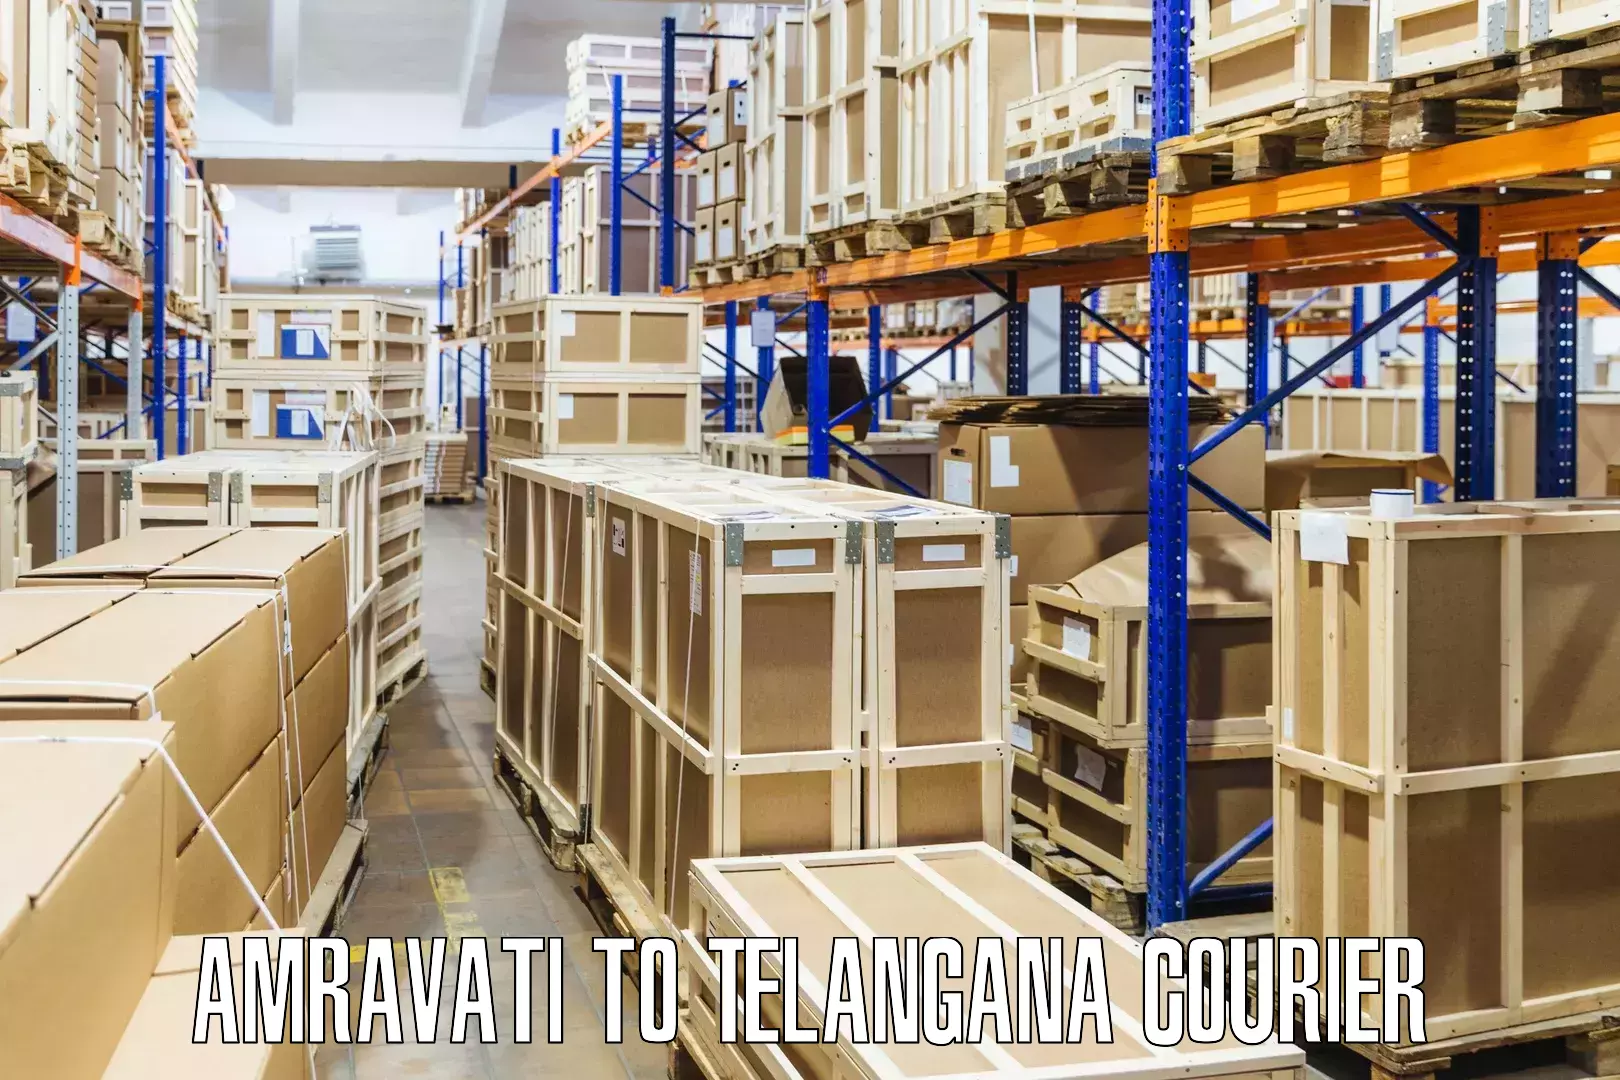 Courier service innovation Amravati to Mogulla Pally